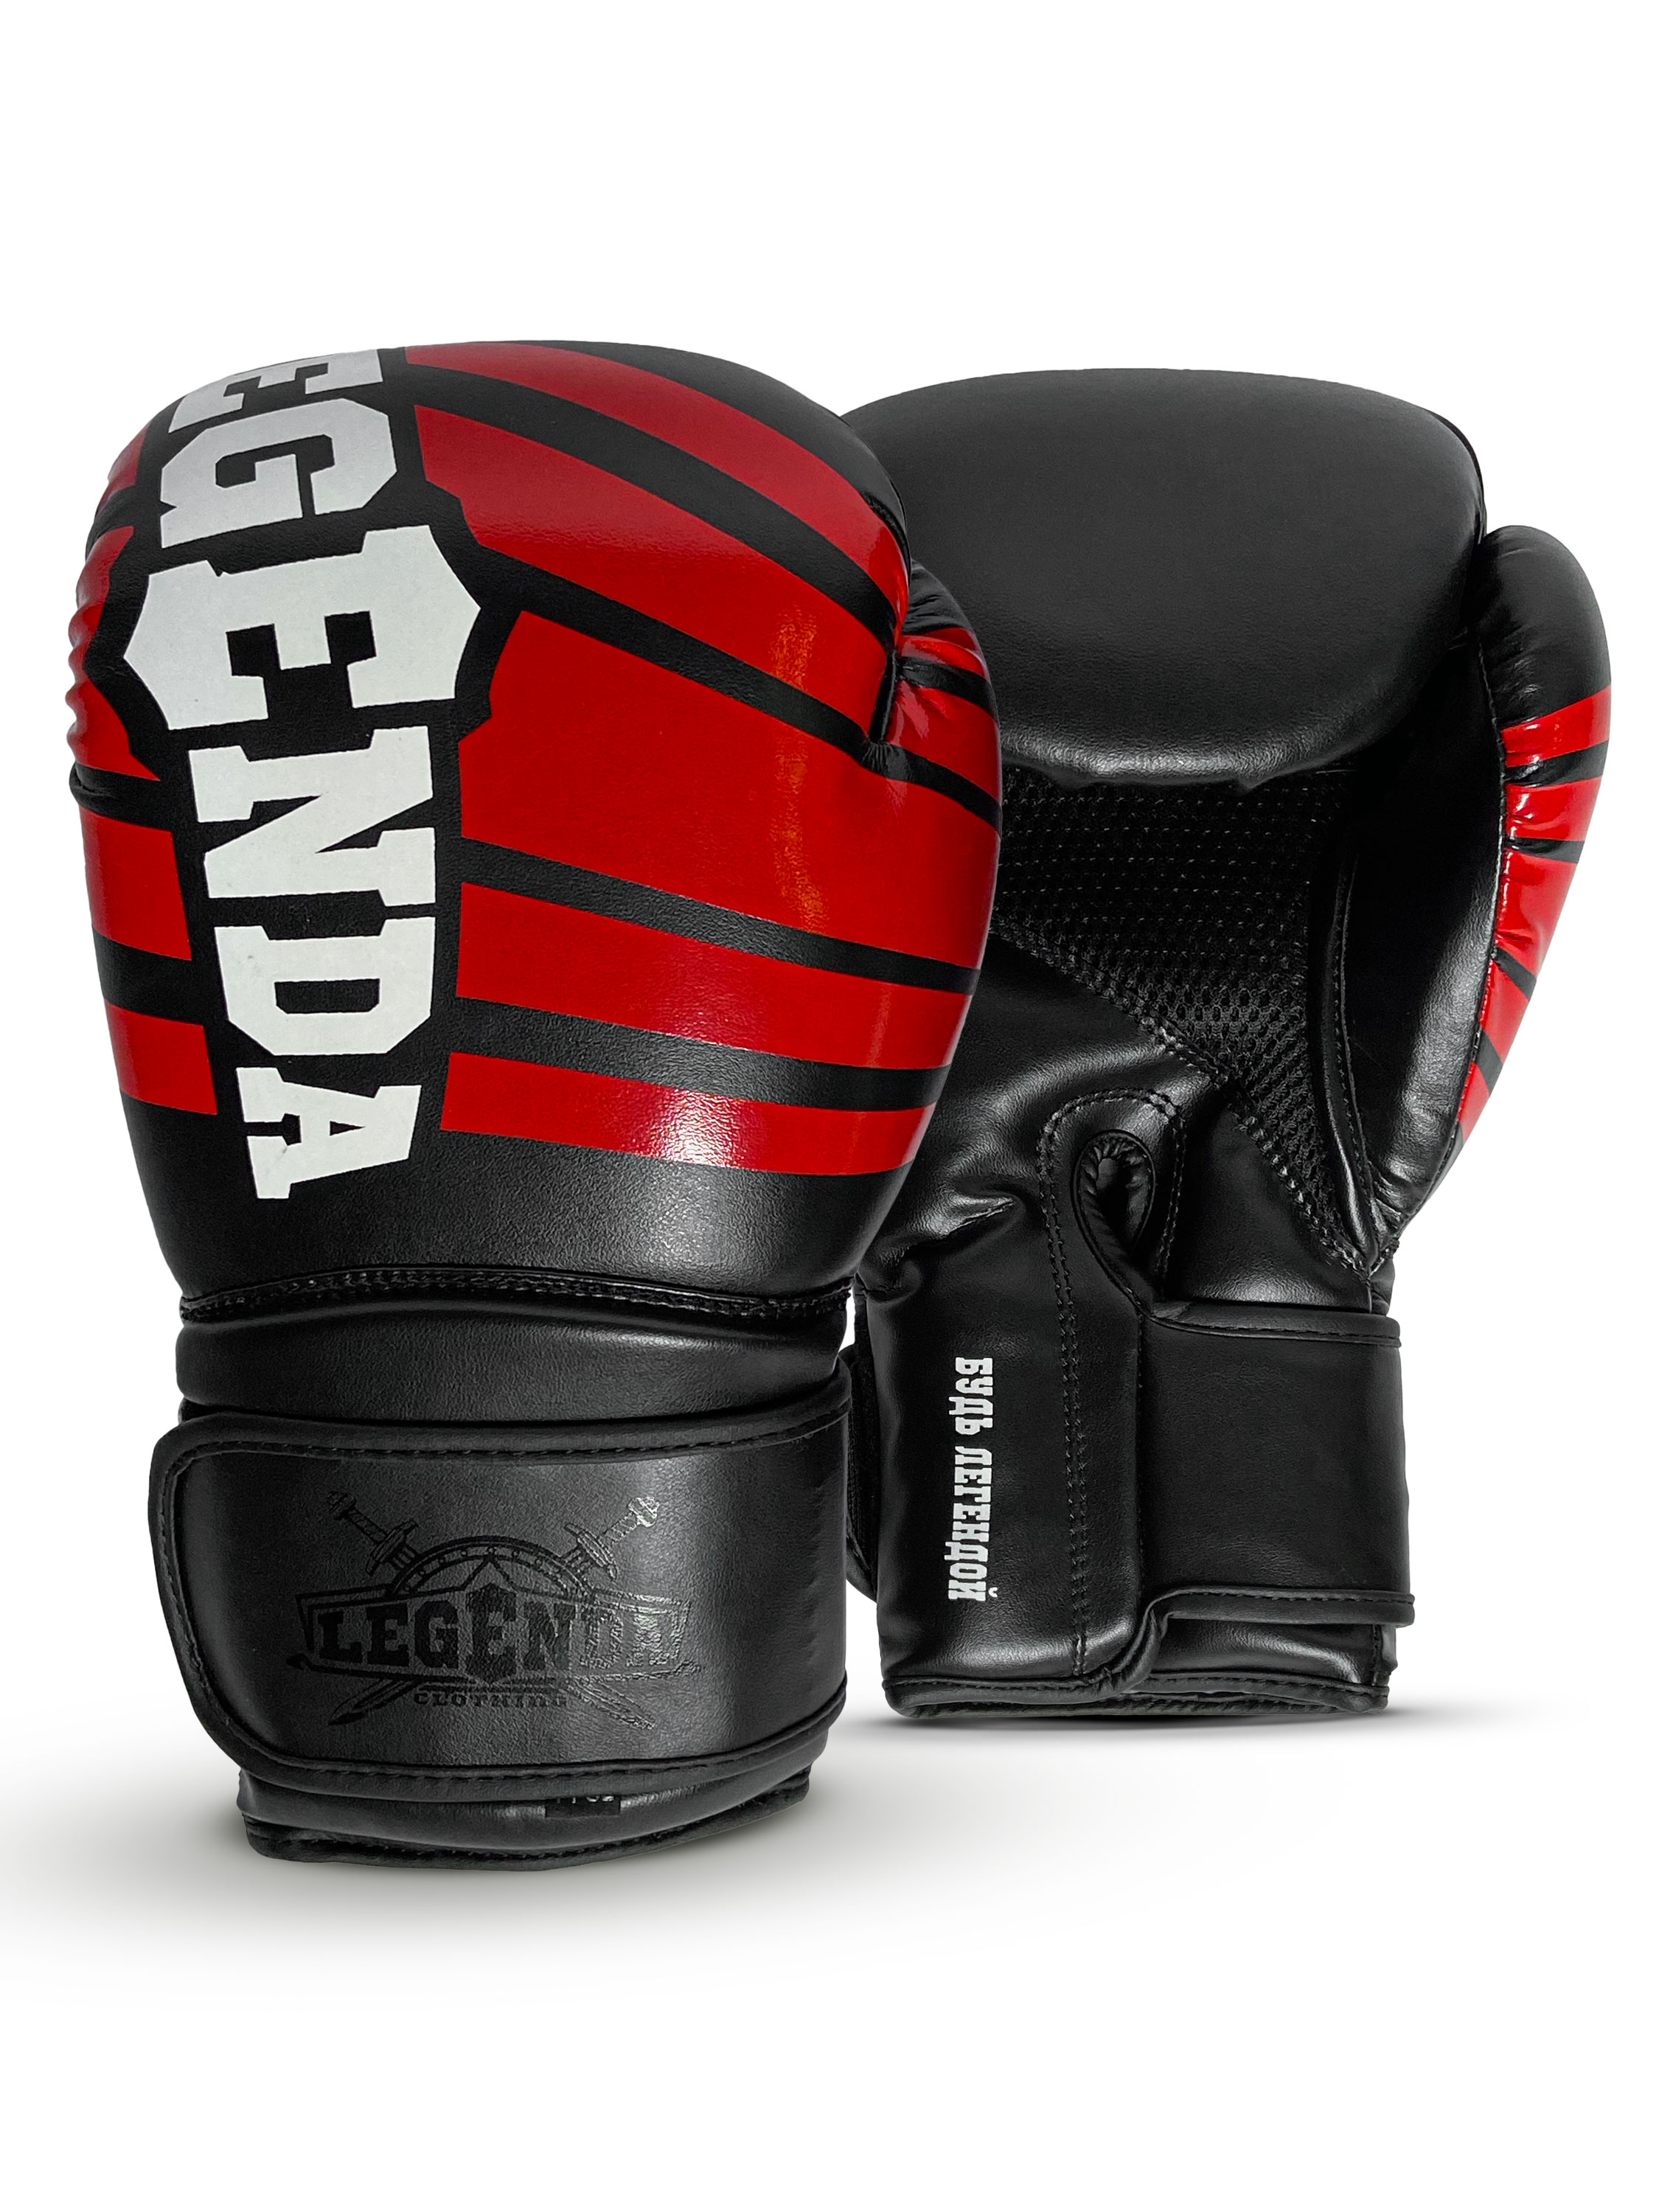 Детские боксерские перчатки Legenda черный, красный 4 унций